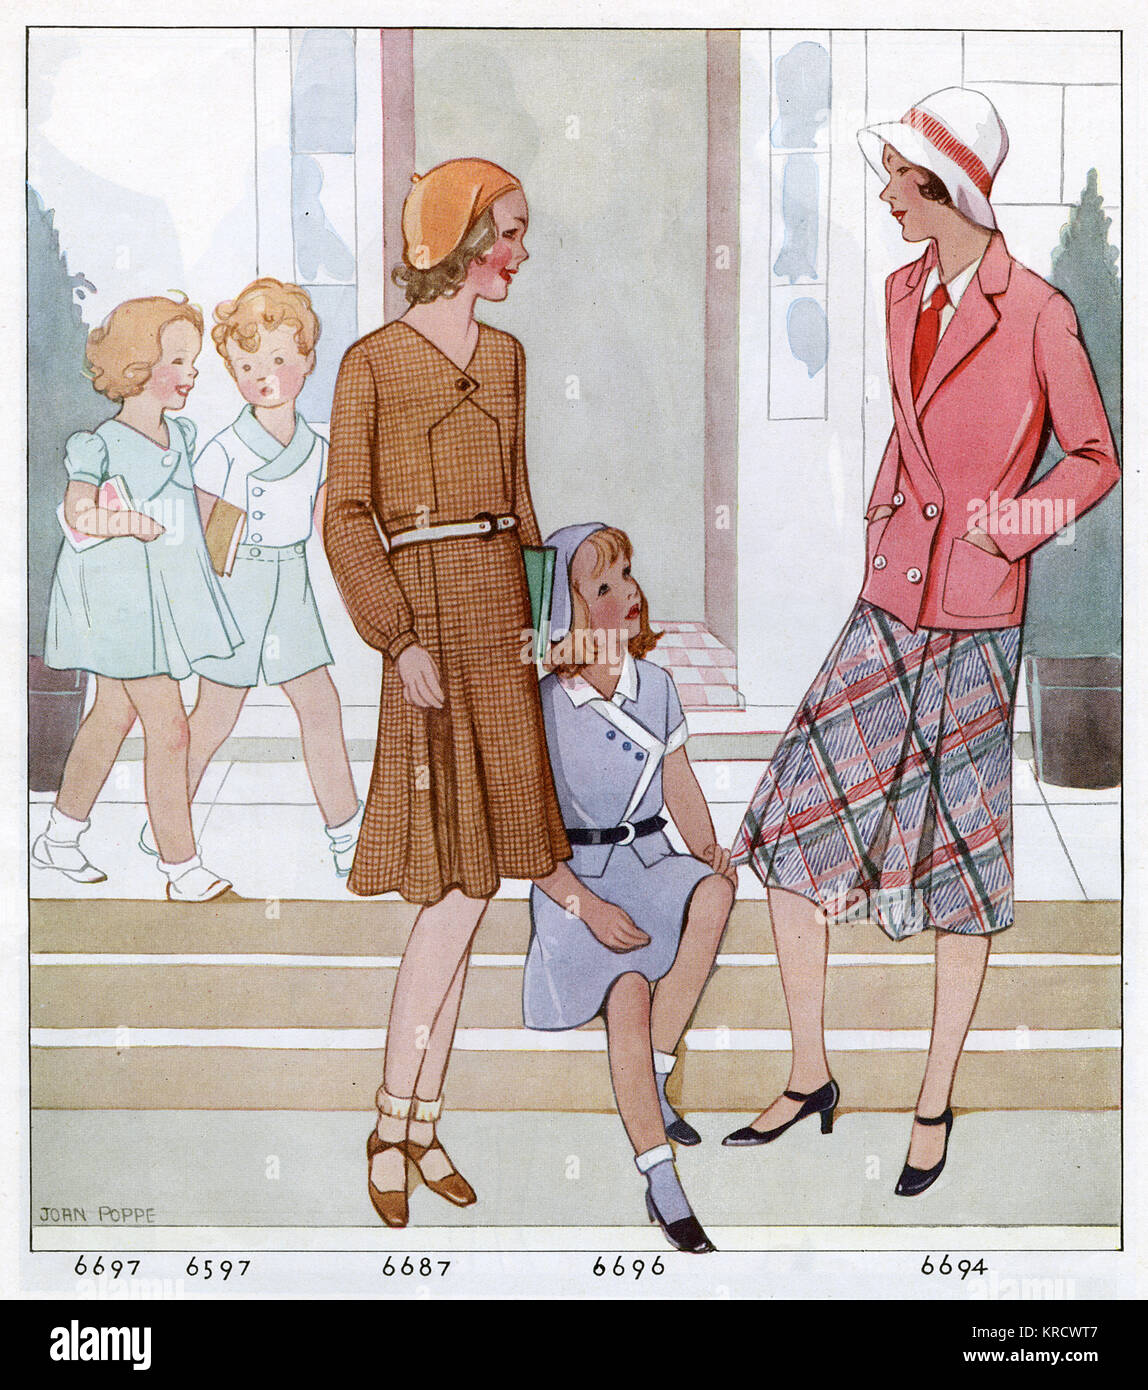 La mode américaine : un petit garçon porte une courte &AMP ; shirt défini, le filles portent des robes qui rappelle de leur mère. La fille aînée porte une chemise &AMP ; cravate avec une jupe &AMP ; veste. Date : 1931 Banque D'Images